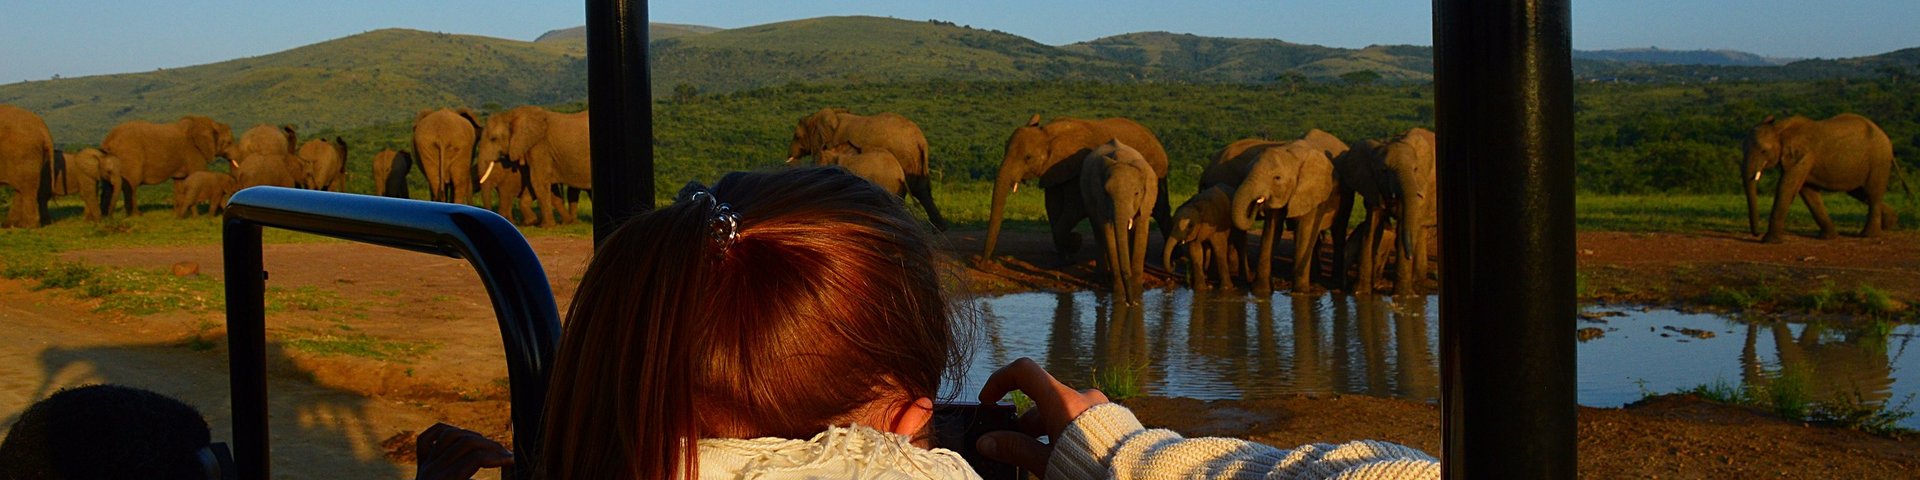 Frau fotografiert Elefanten vom Safari-Fahrzeug in Südafrika